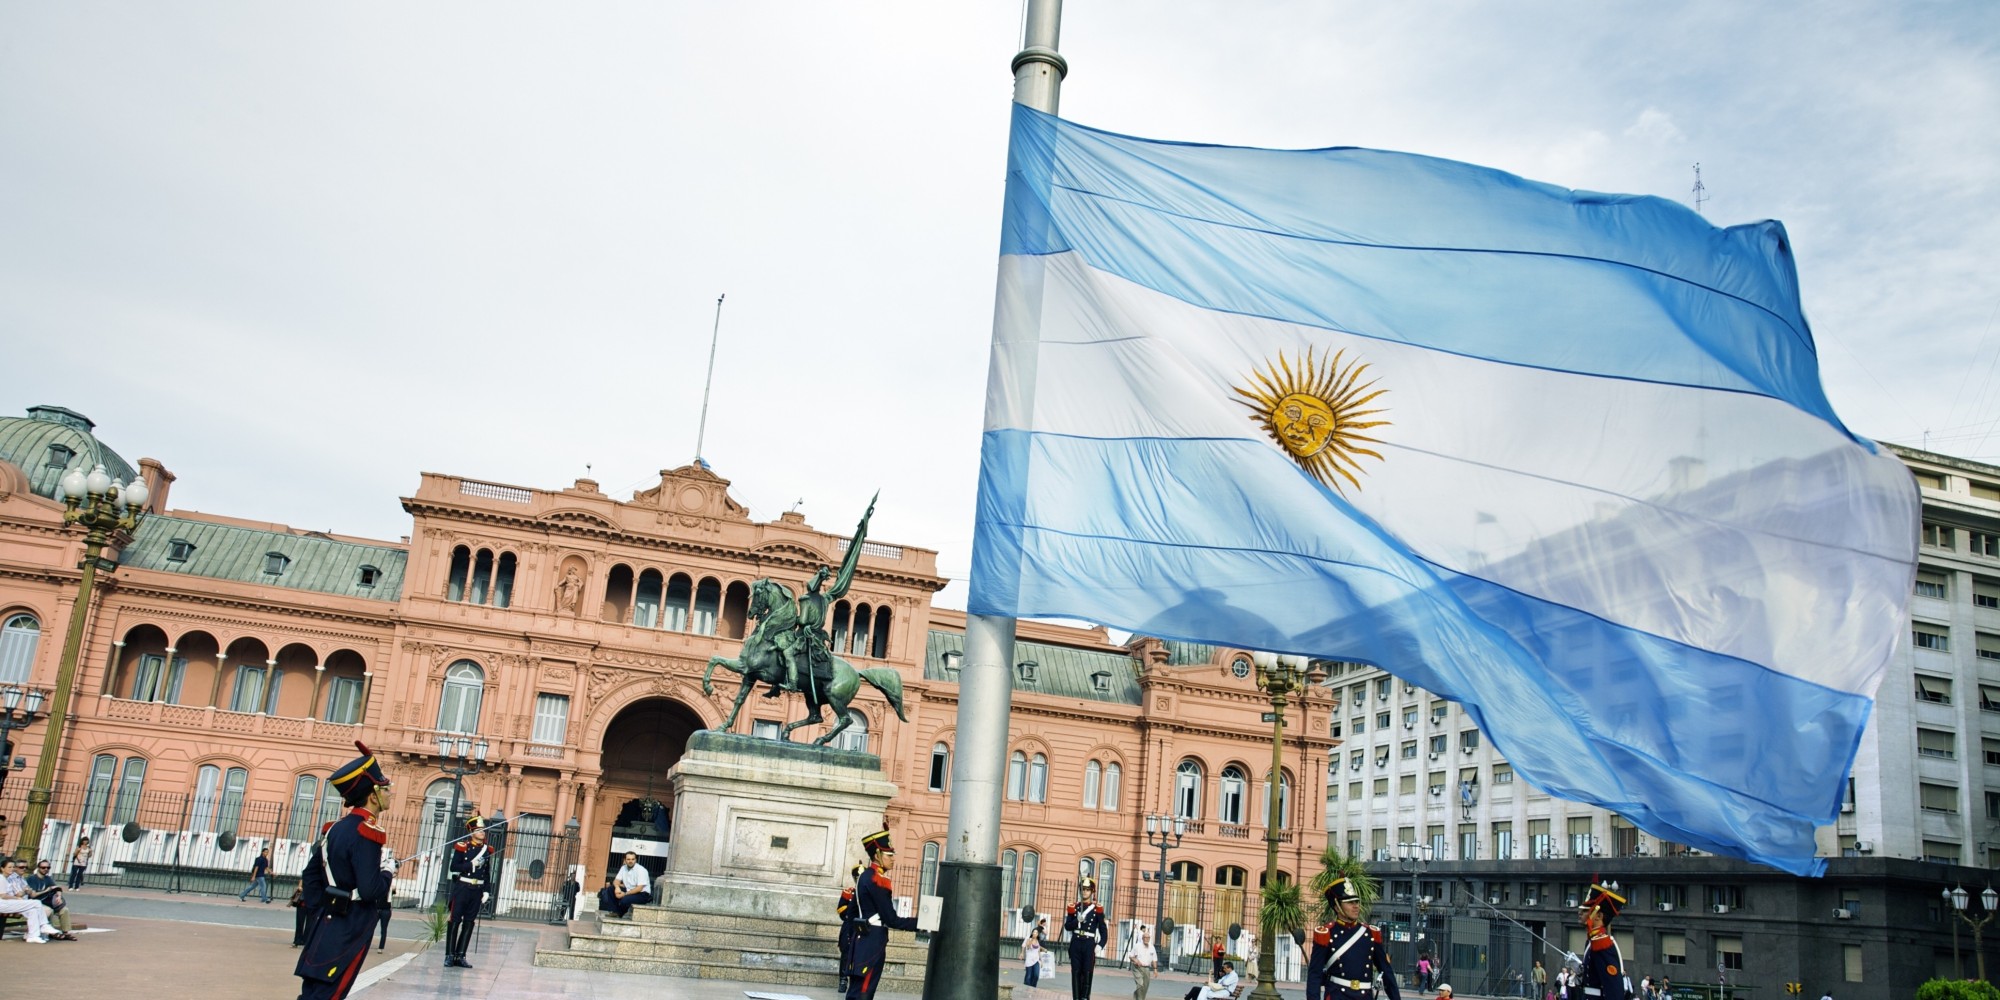  Del 6 al 29 de julio, Argentina será el país invitado de “Querétaro amigo del mundo”